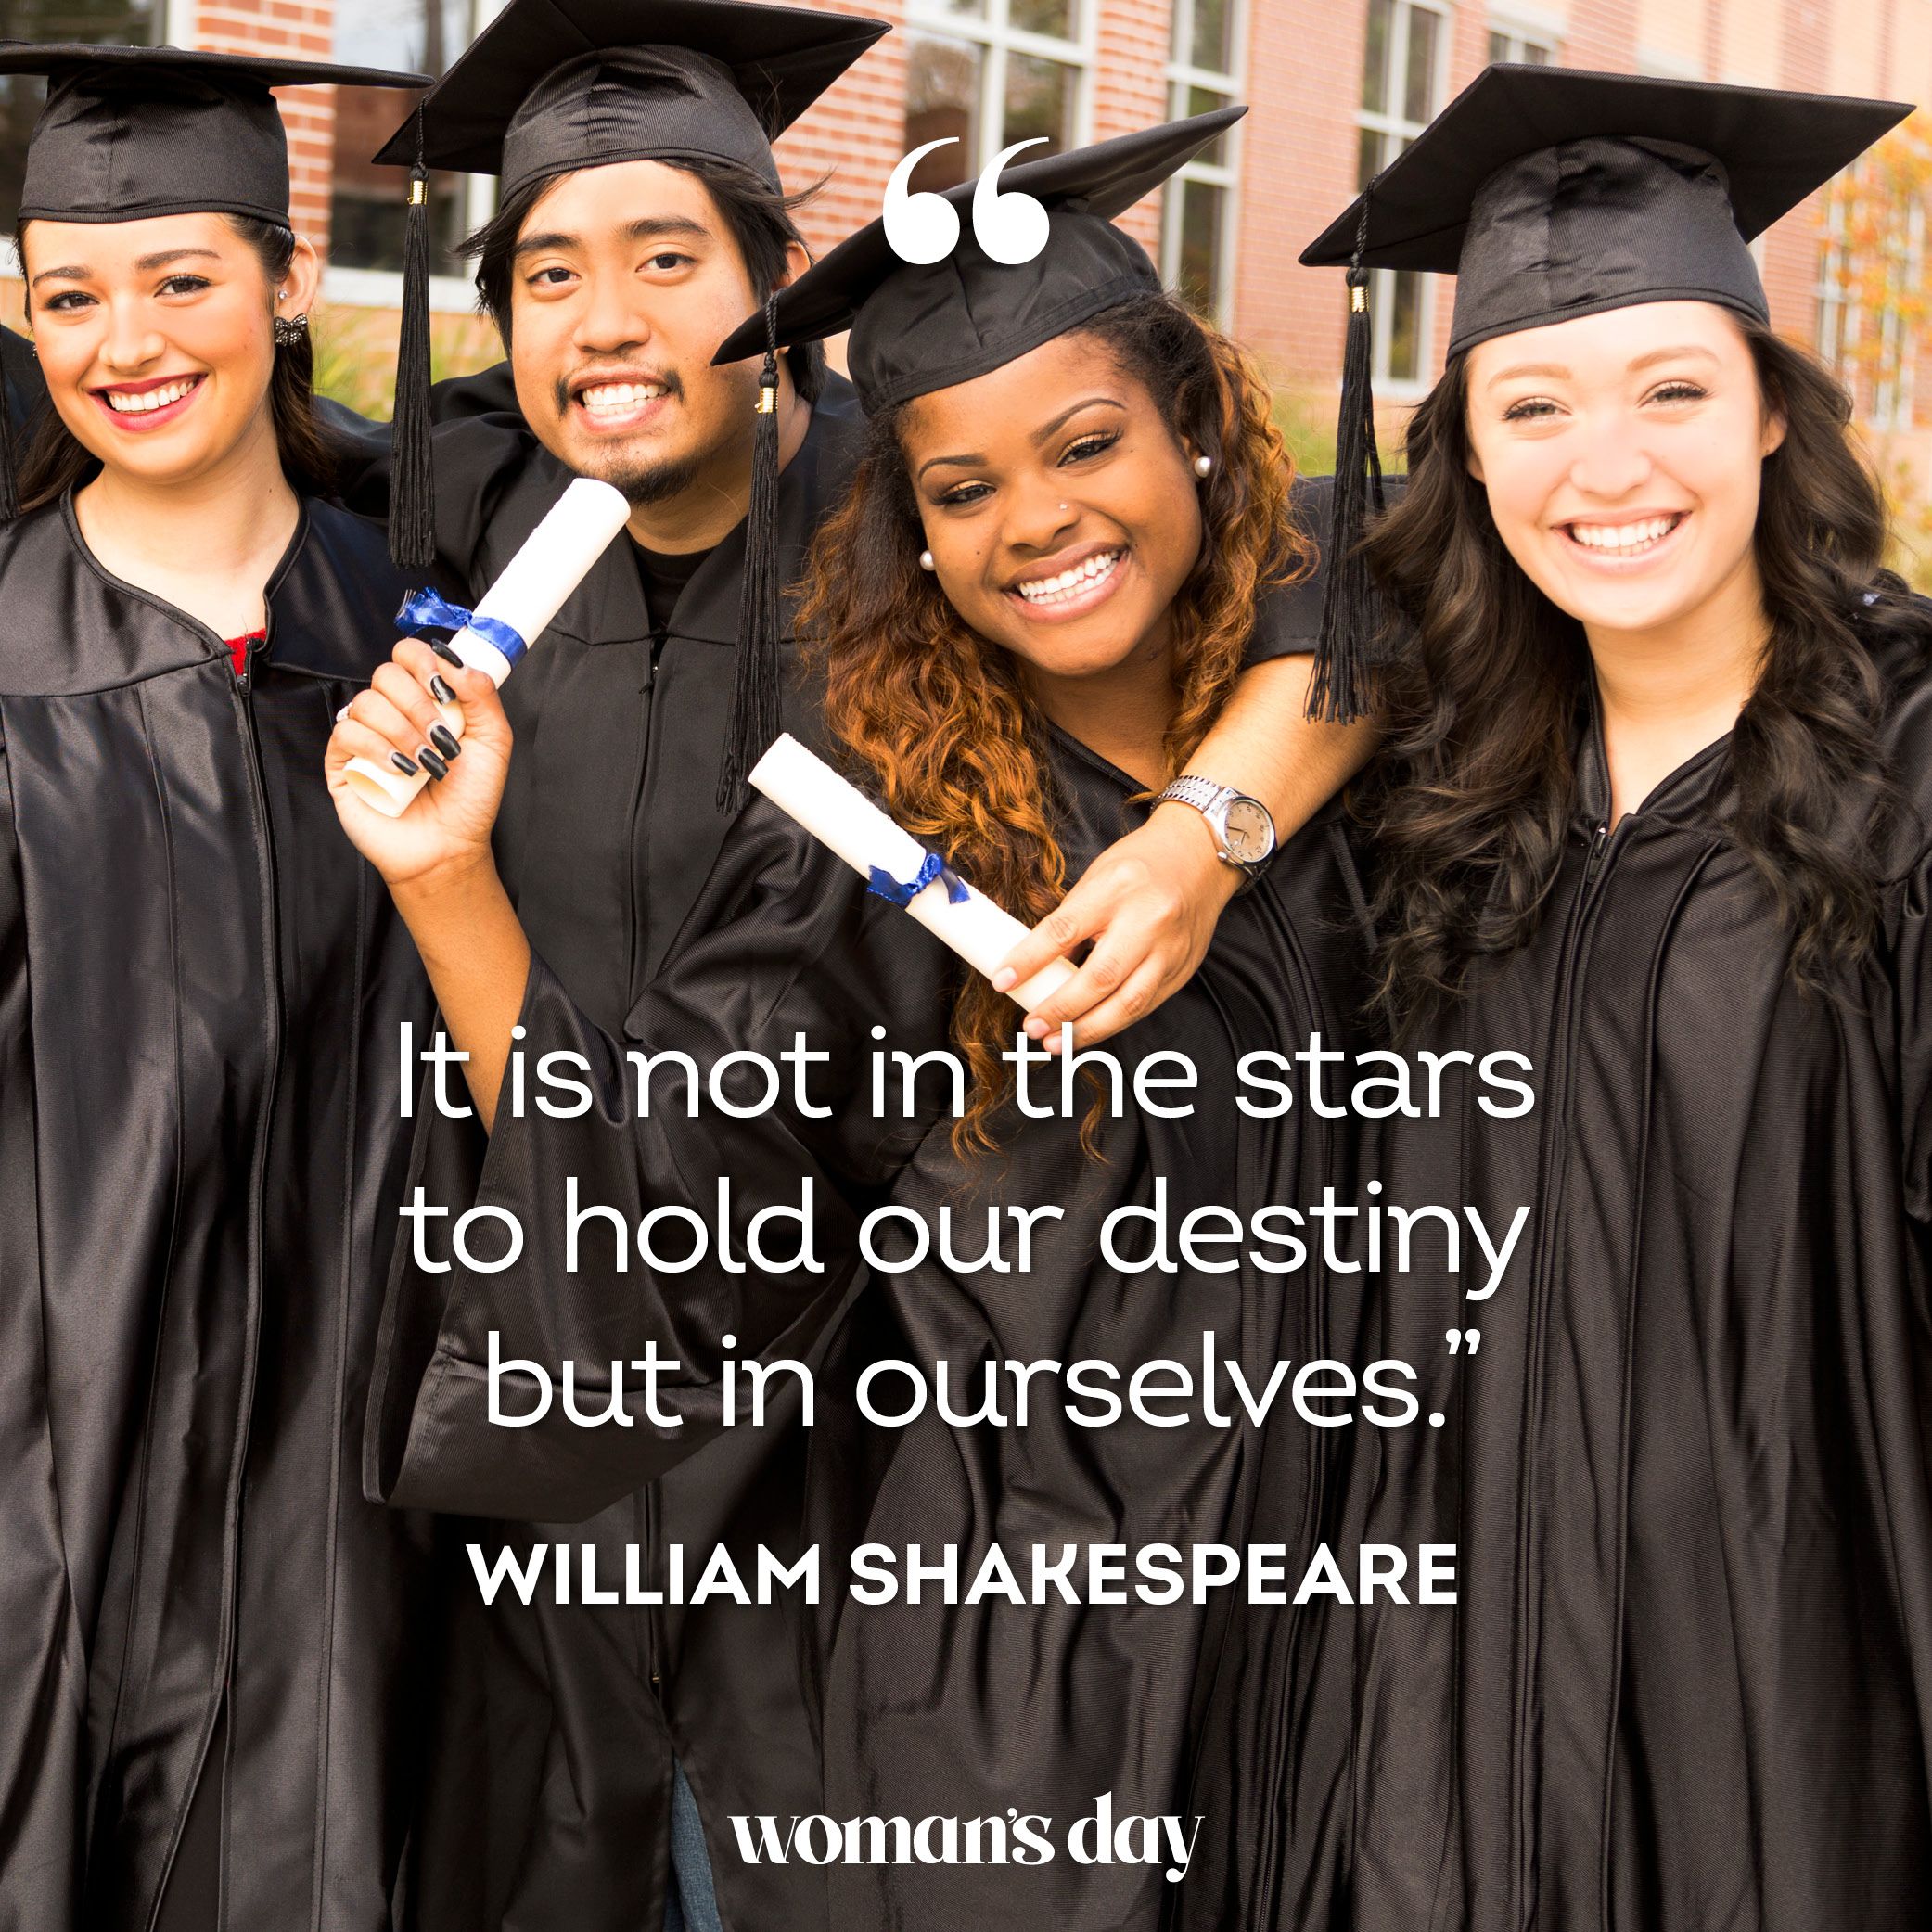 congratulations 2022 graduates quotes